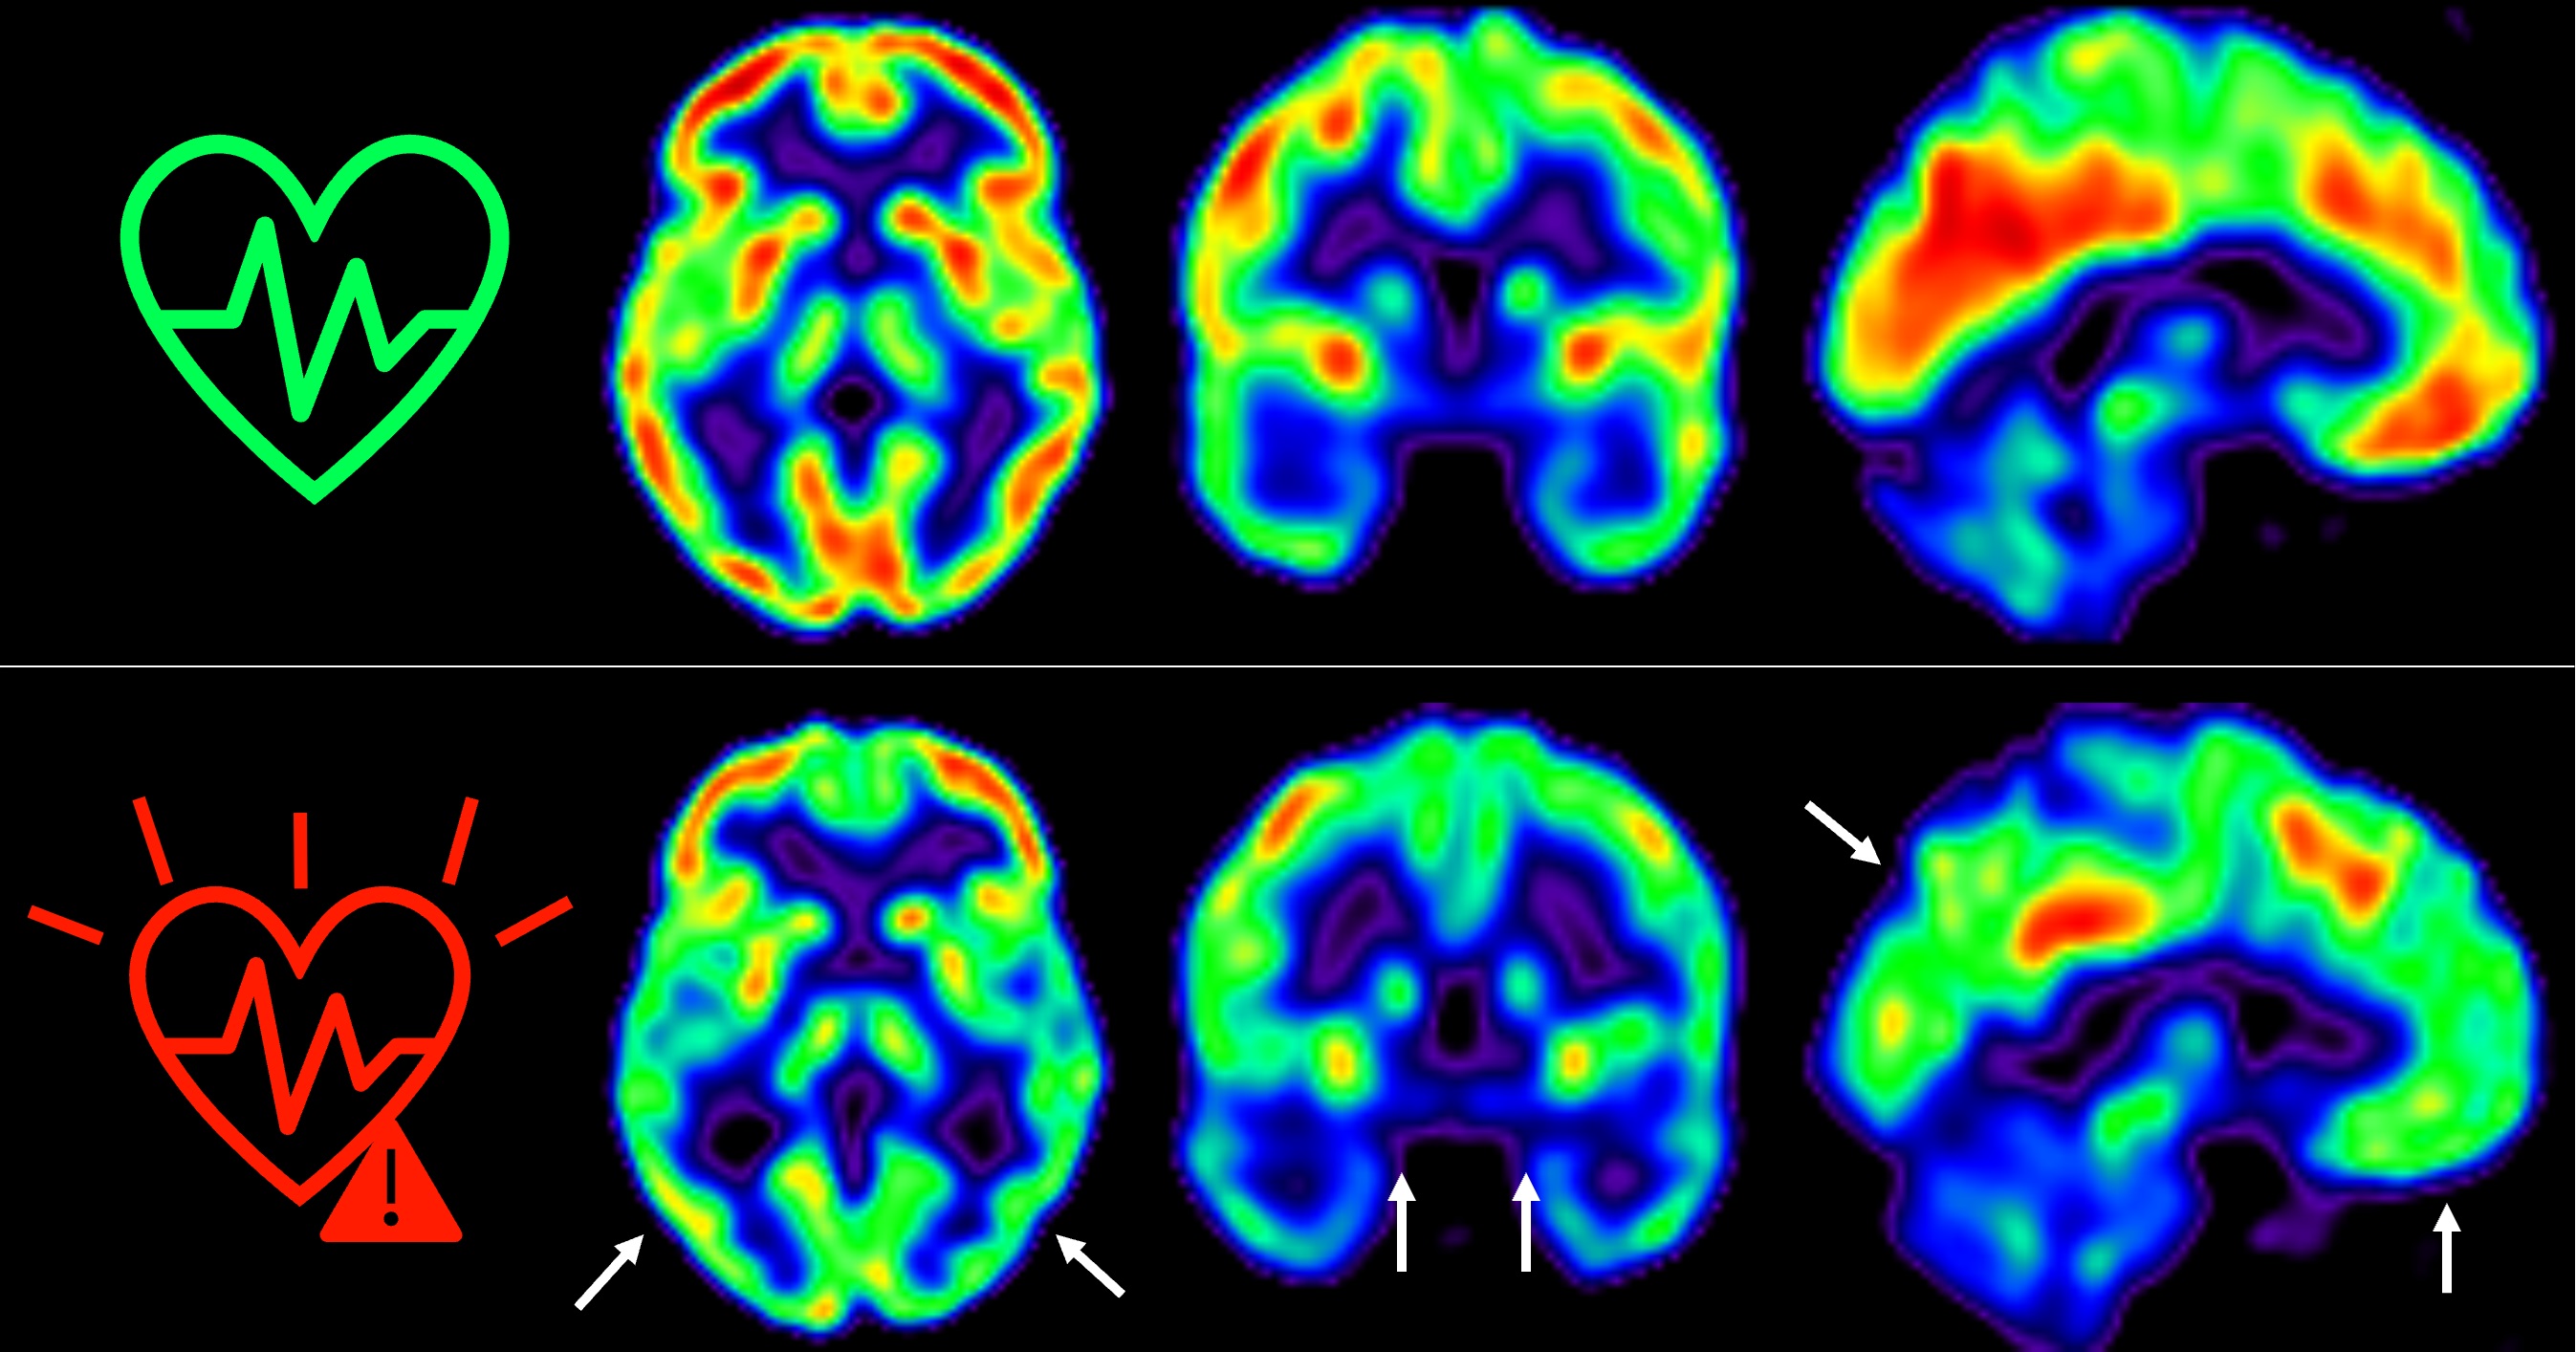 Las imágenes representan la captación de glucosa en cerebro medida por tomografía por emisión de positrones en individuos de mediana edad con bajo (arriba) o alto (abajo) riesgo cardiovascular sostenido a lo largo de 5 años. Los colores representan el consumo de glucosa cerebral, con rojo indicando un consumo más alto y azul más bajo